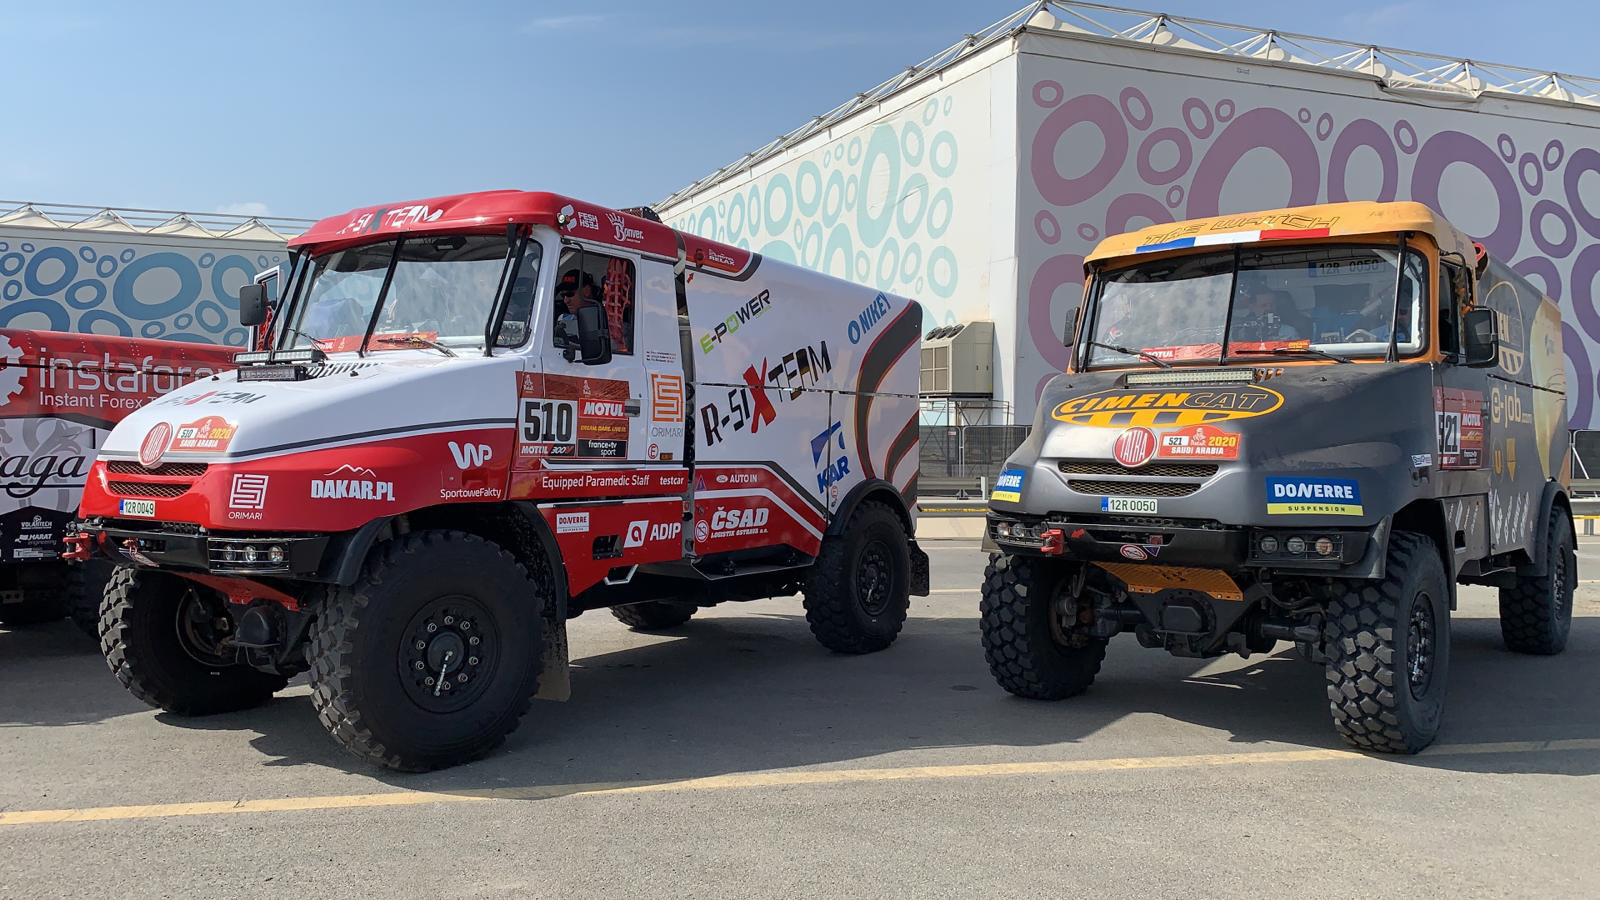 Rallye Dakar 2020 odstartovala, Fesh Fesh Group zastoupen kamiony s číslem 510 a 521